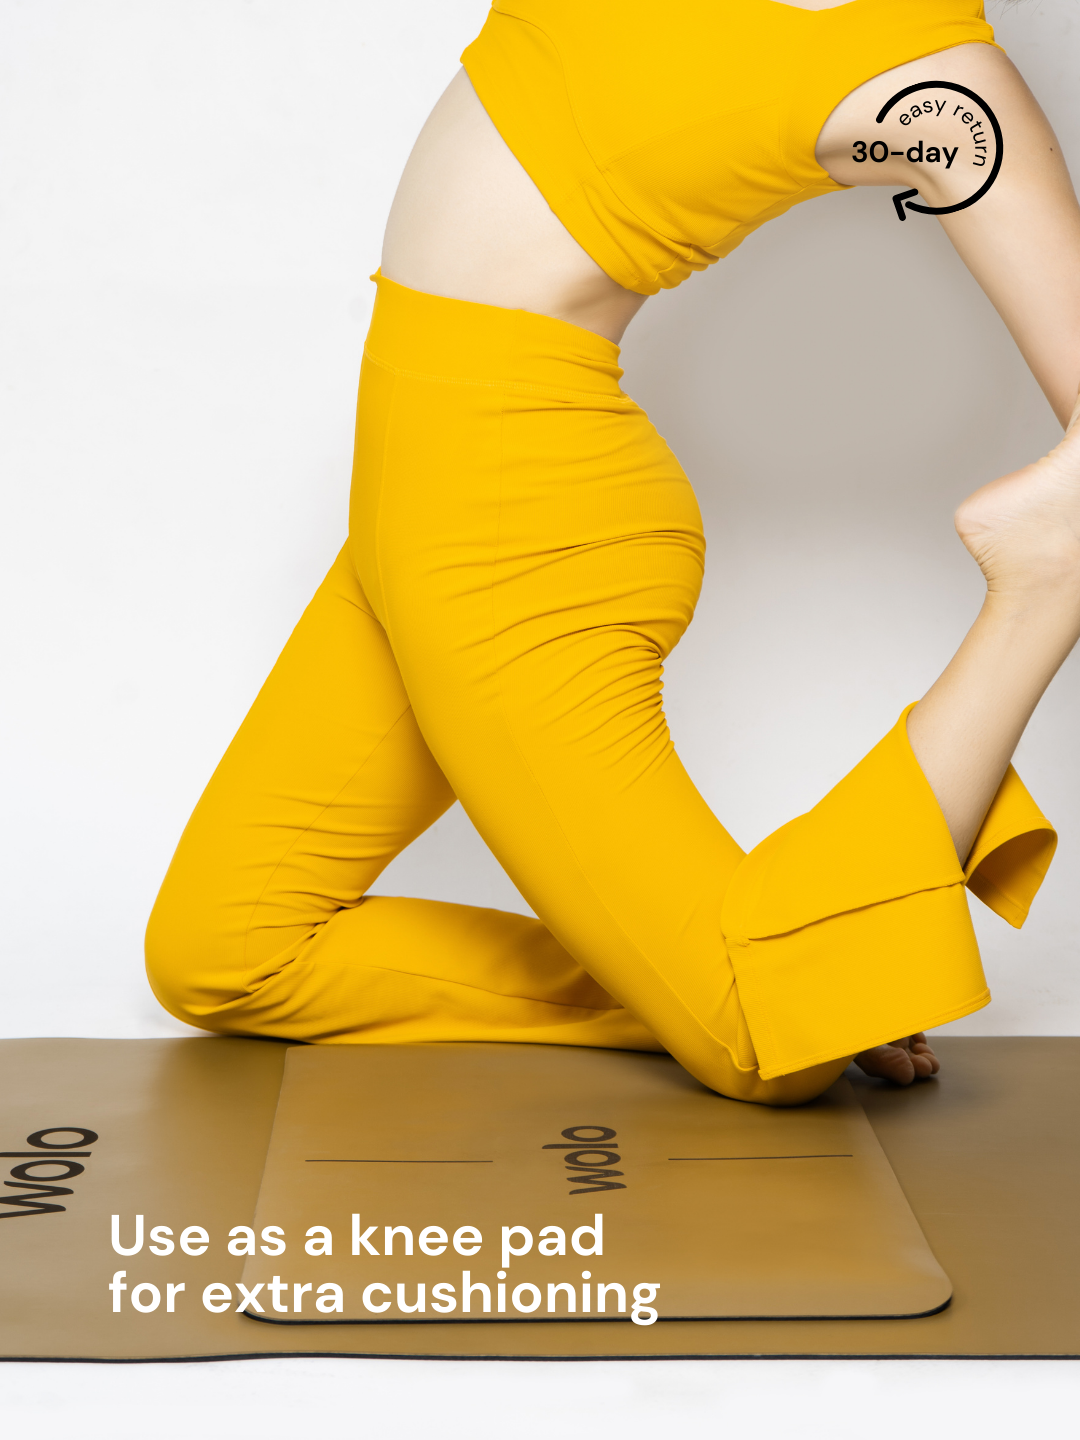 Lady kneeling on a Pebble khaki Align yoga pad